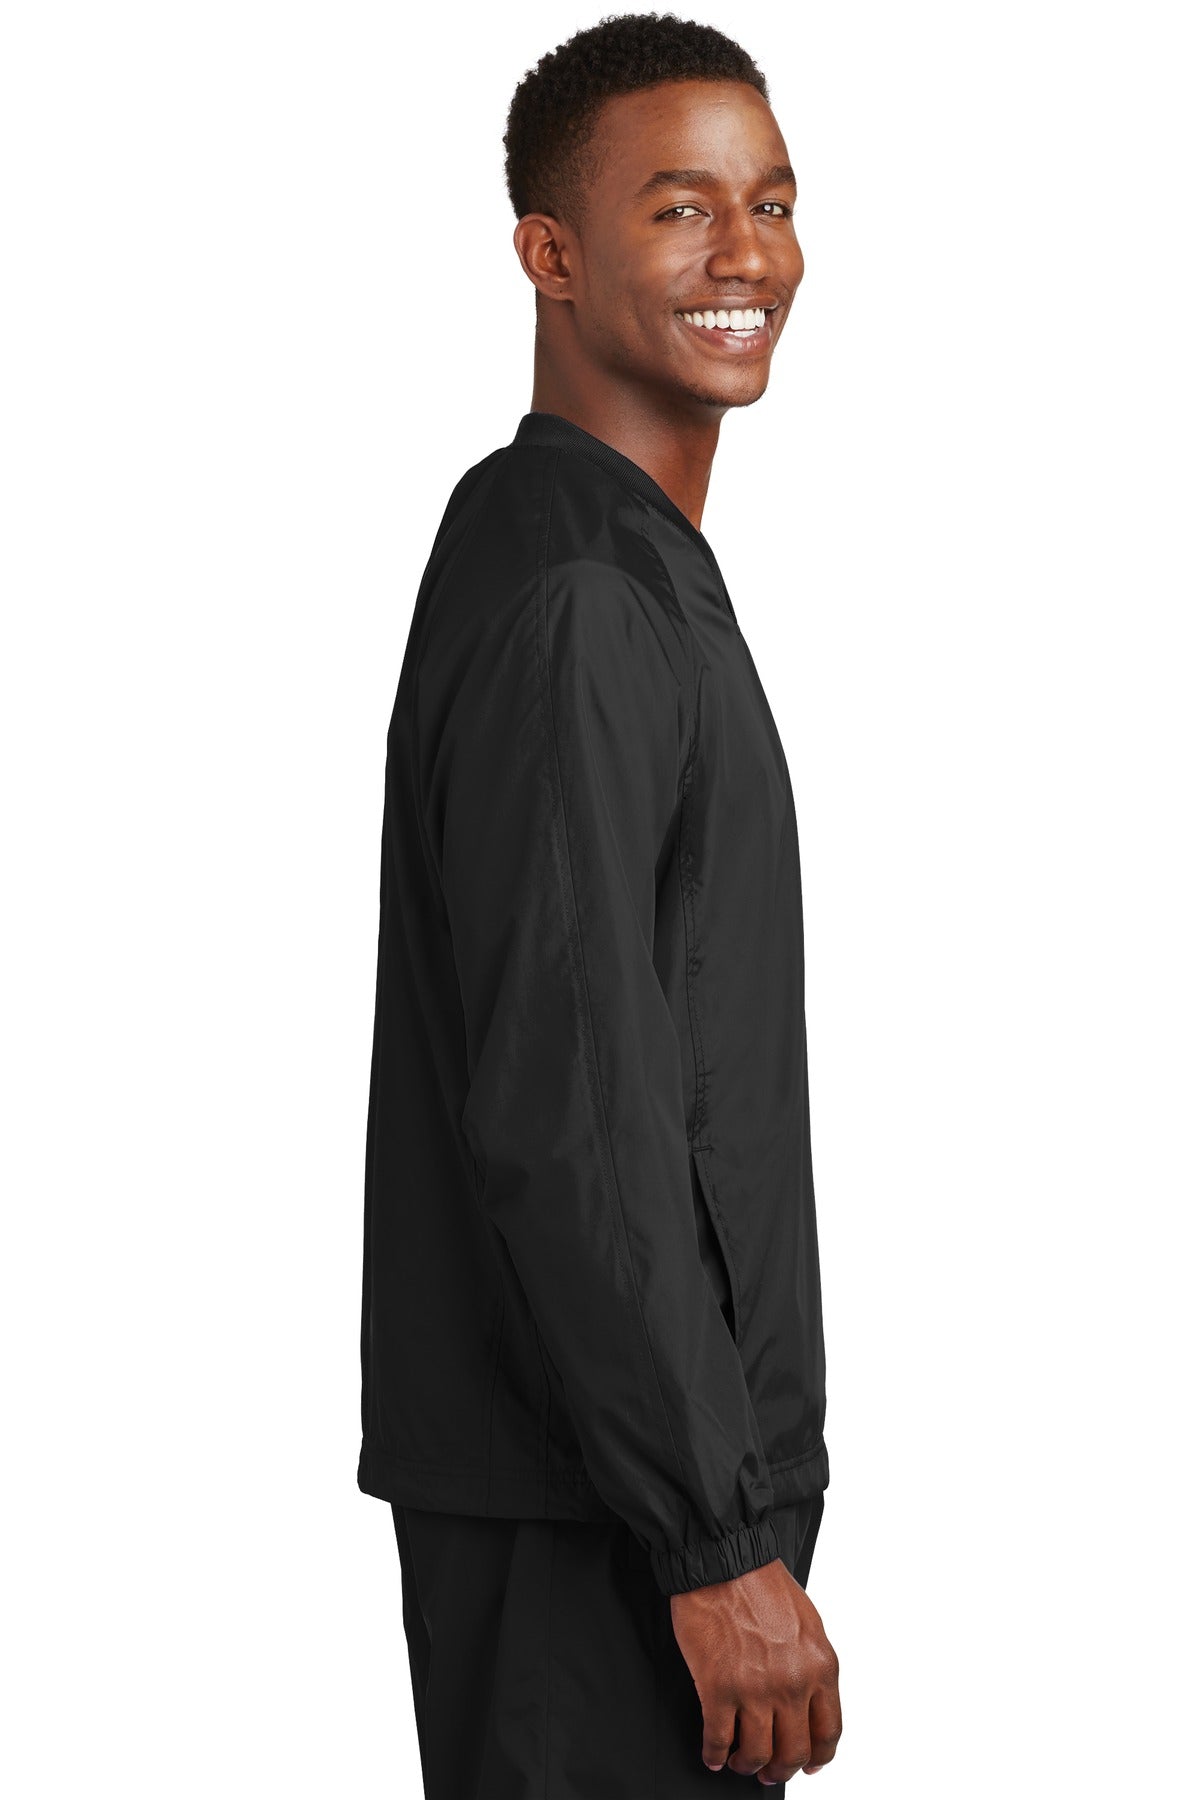 Sport-Tek® V-Neck Raglan Wind Shirt. JST72 - DFW Impression